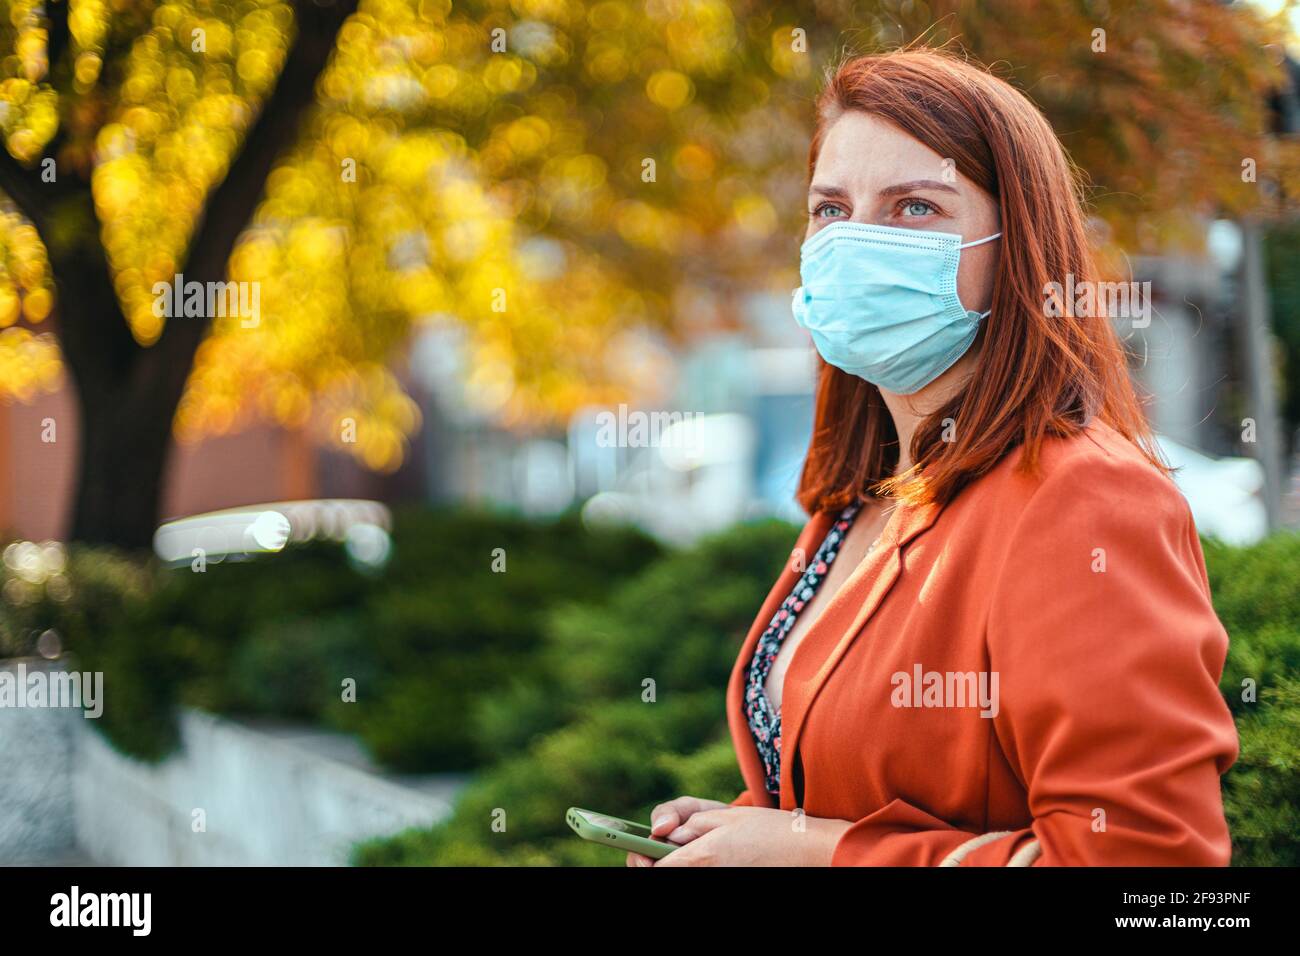 Geschäftsfrau mit Sicherheitsmaske, die in der Stadt steht. Schönes junges Mädchen mit roten Haaren in einer schützenden medizinischen Maske gegen allegria, Virus Stockfoto